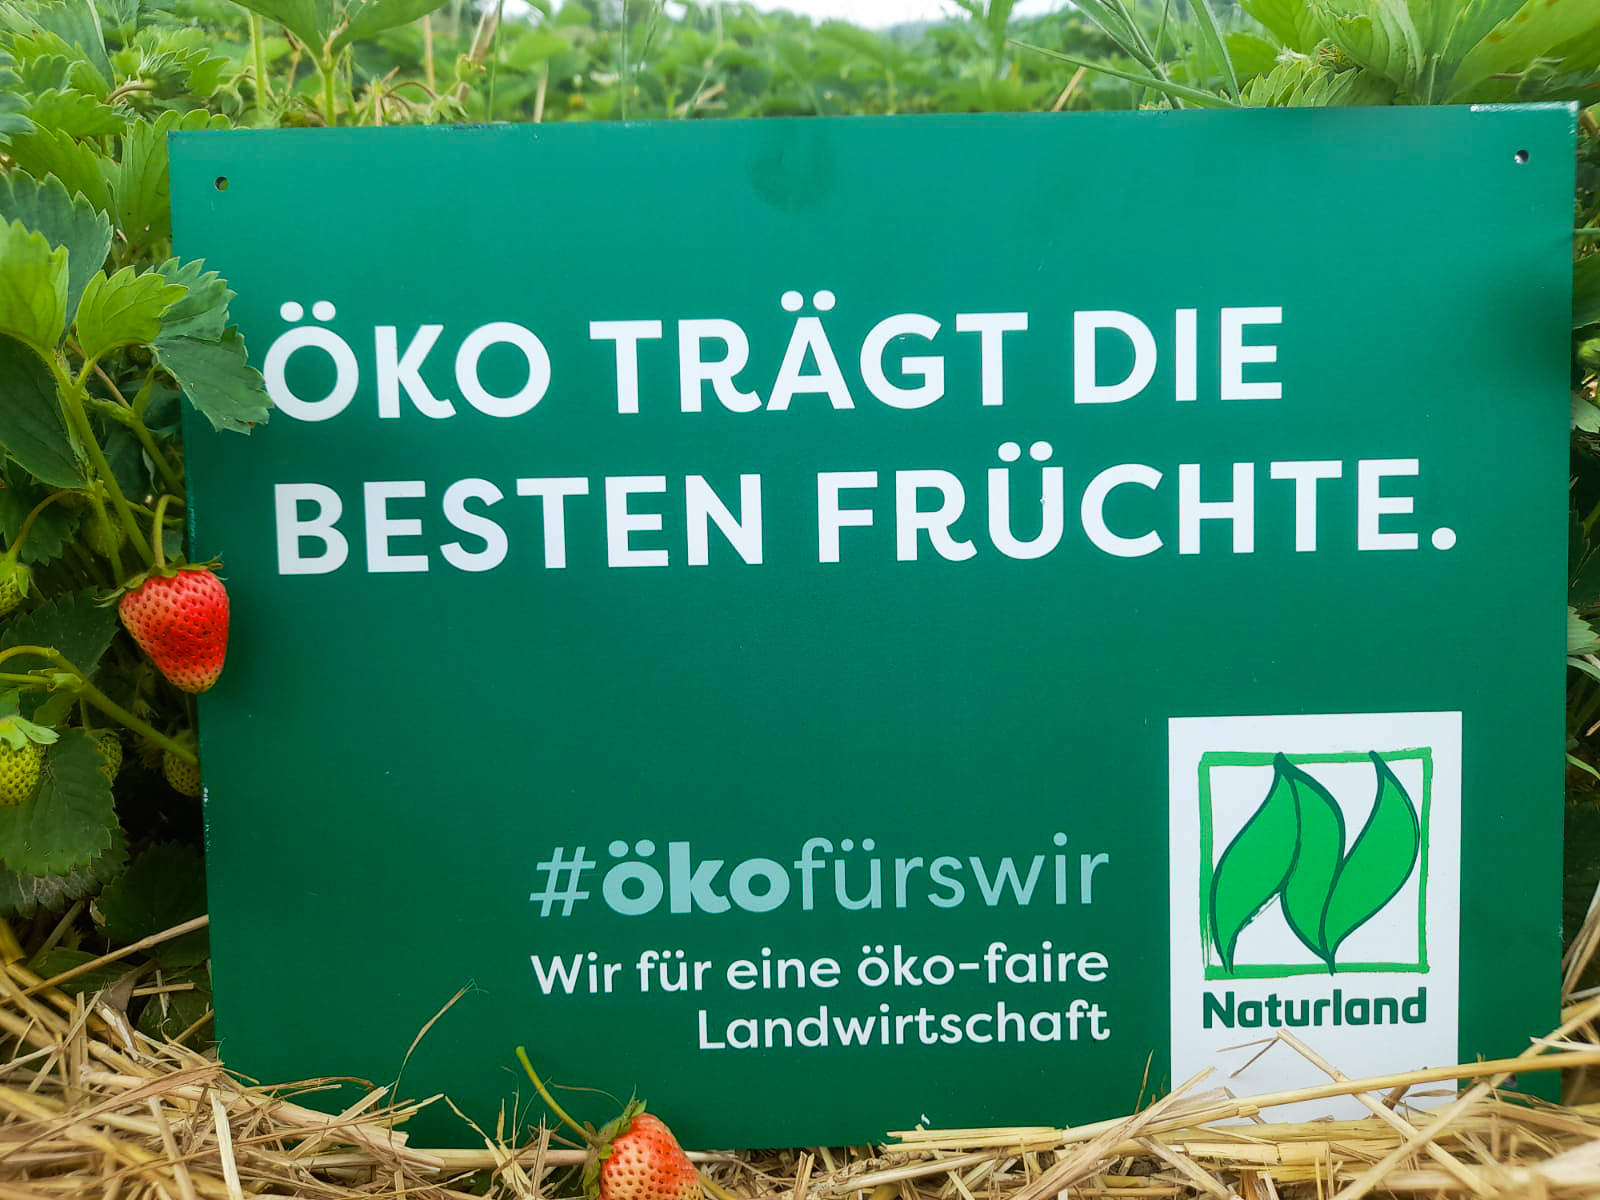 Seit 2016 ist der Betrieb von Klenke Naturland-zertifiziert.